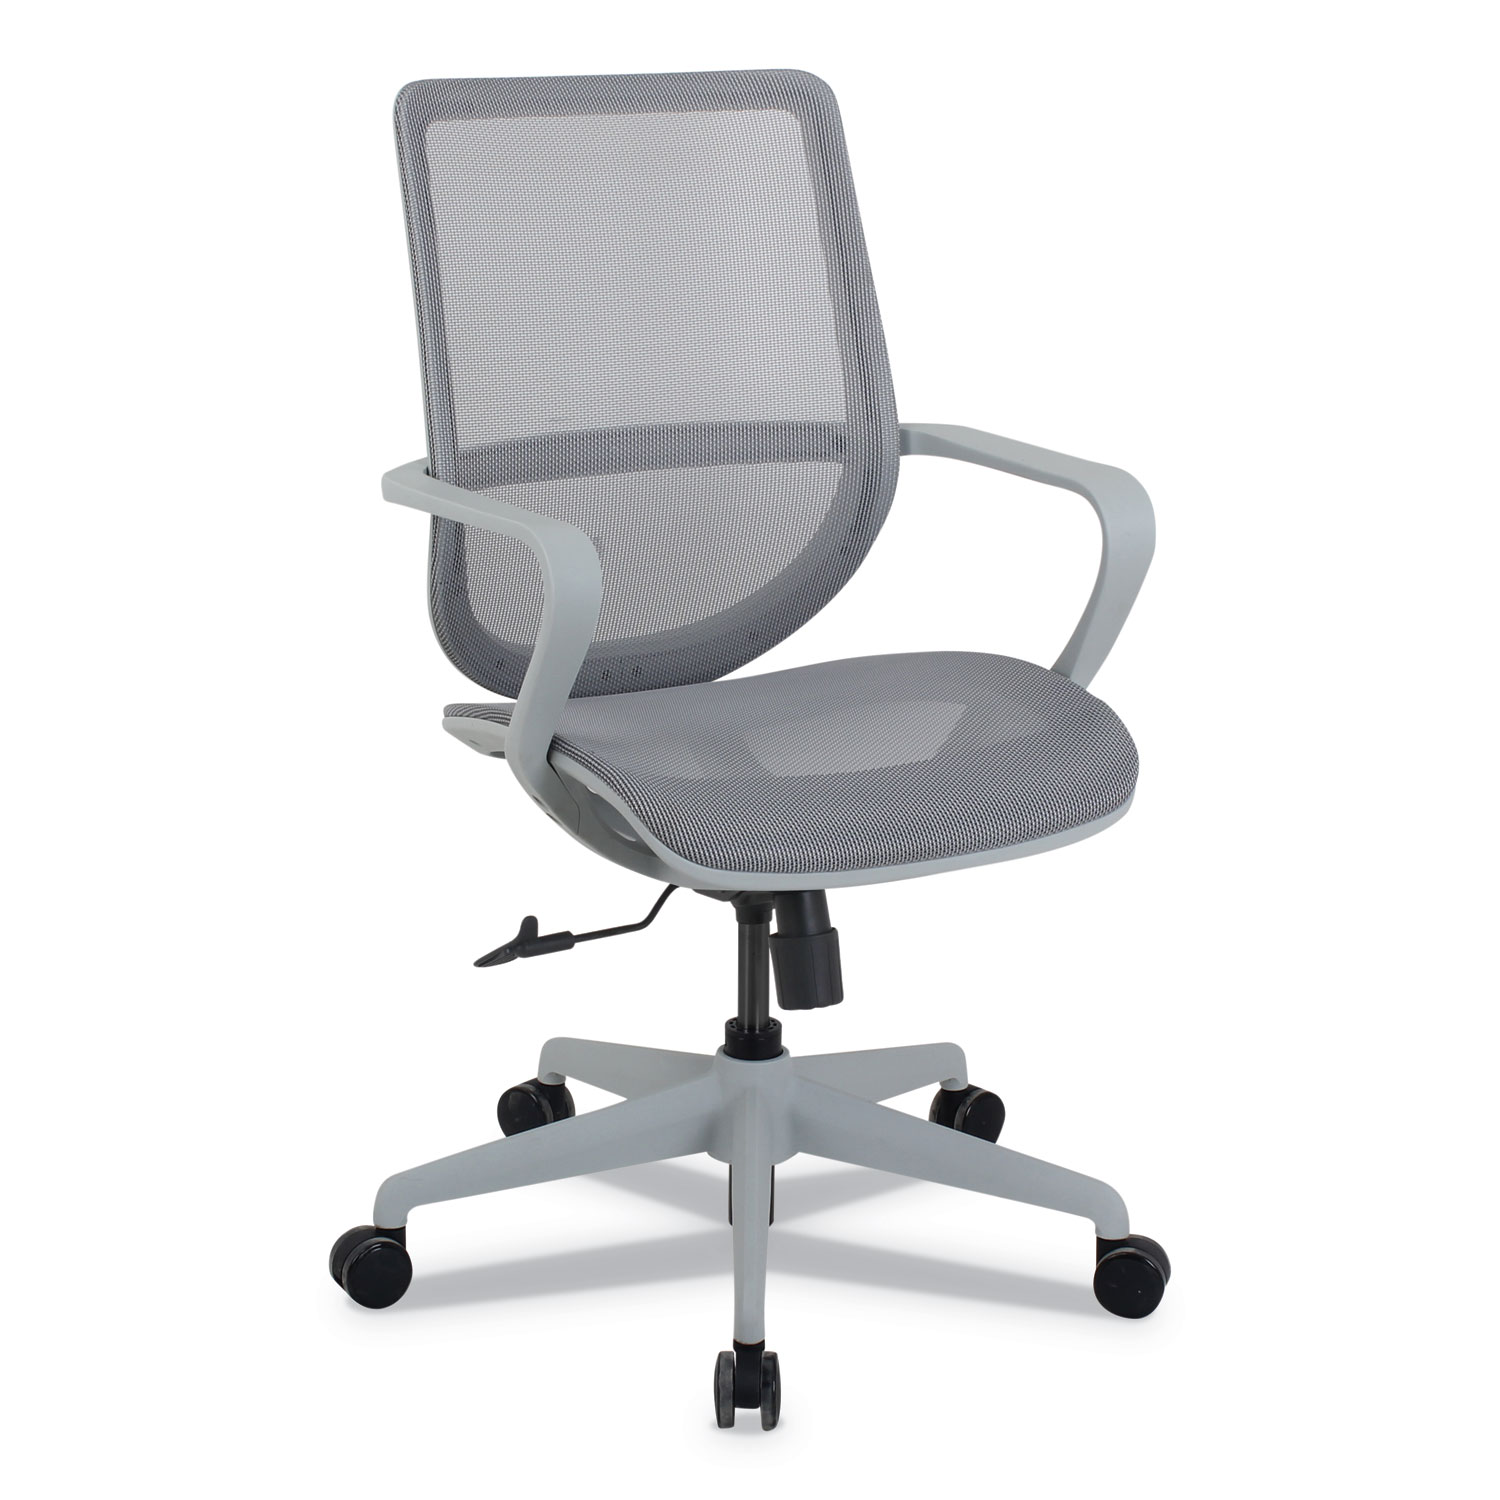  Alera KA14248 Alera Macklin Series Mid-Back All-Mesh Office Chair, Up to 275 lbs., Silver Seat/Back, Pewter Base (ALEKA14248) 